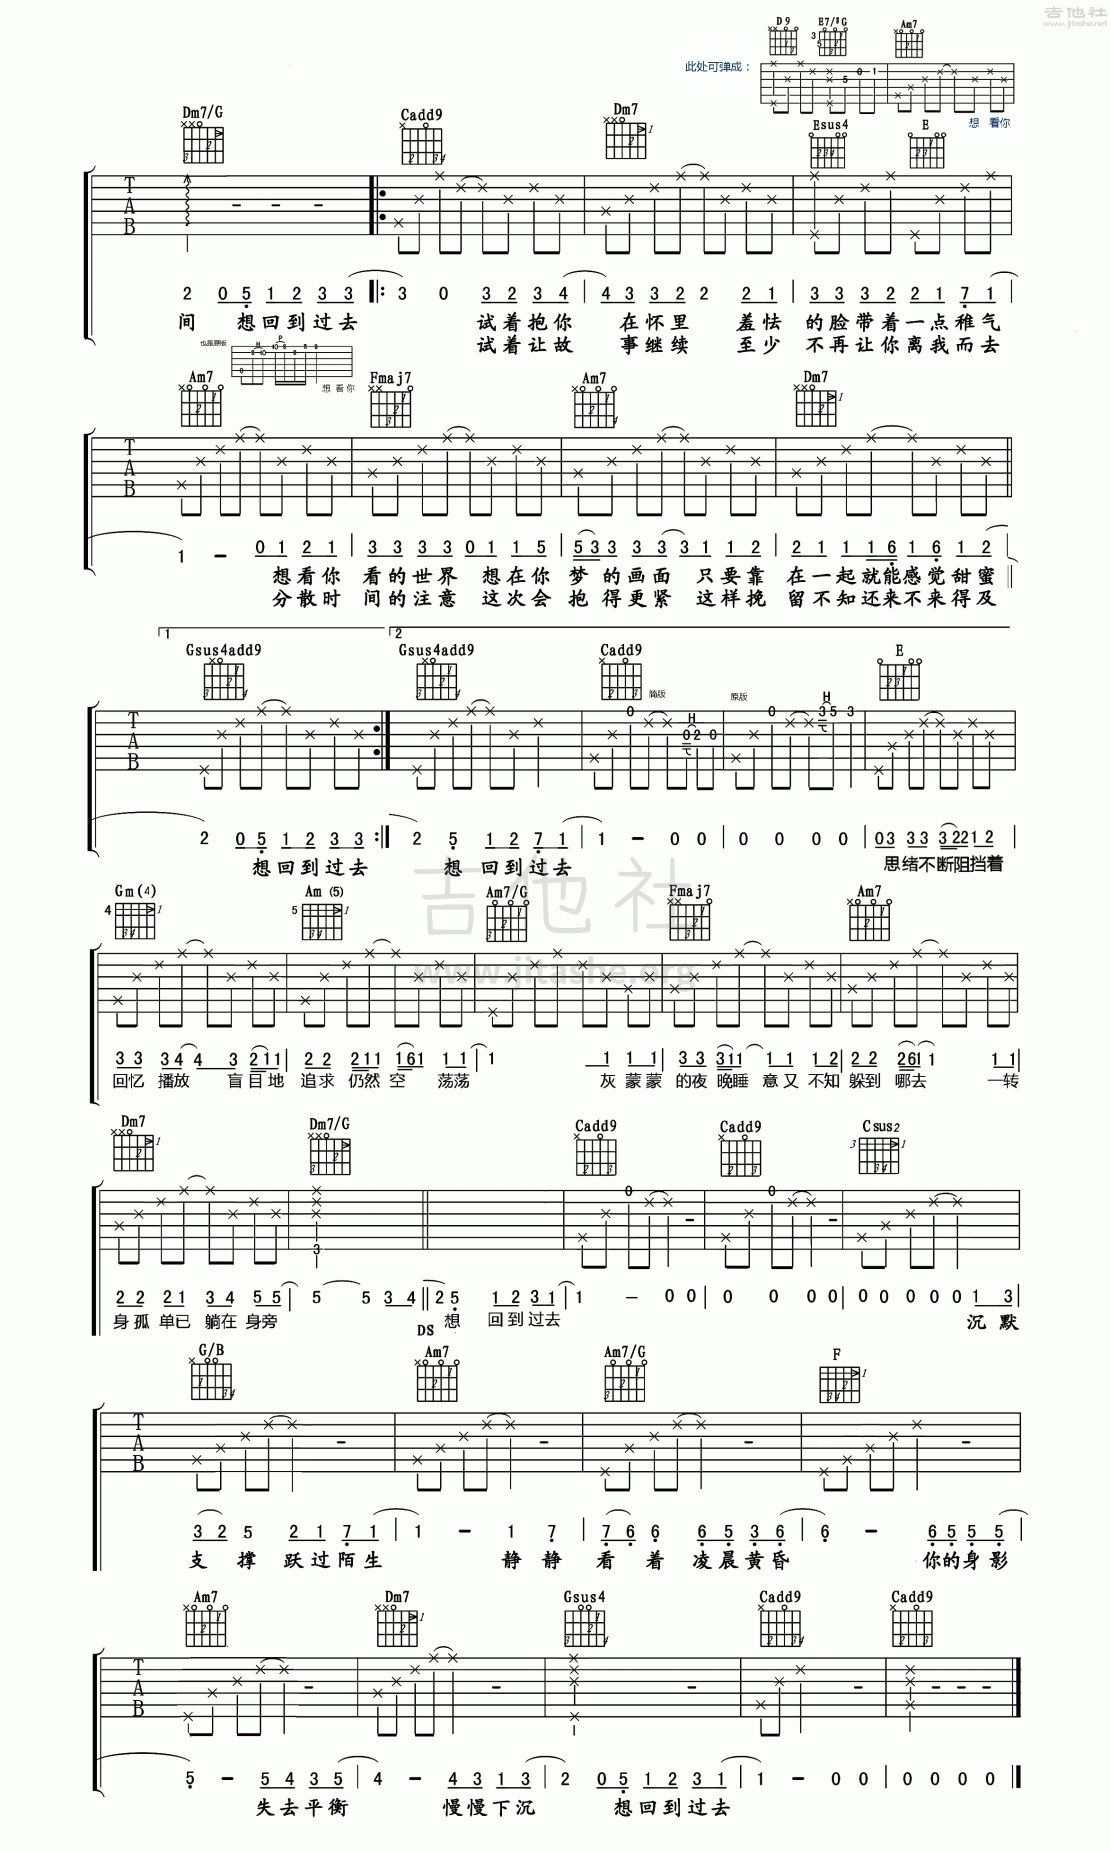 周杰伦《回到过去》吉他谱初级简单版酷音小伟吉他教学 - 全屏看谱